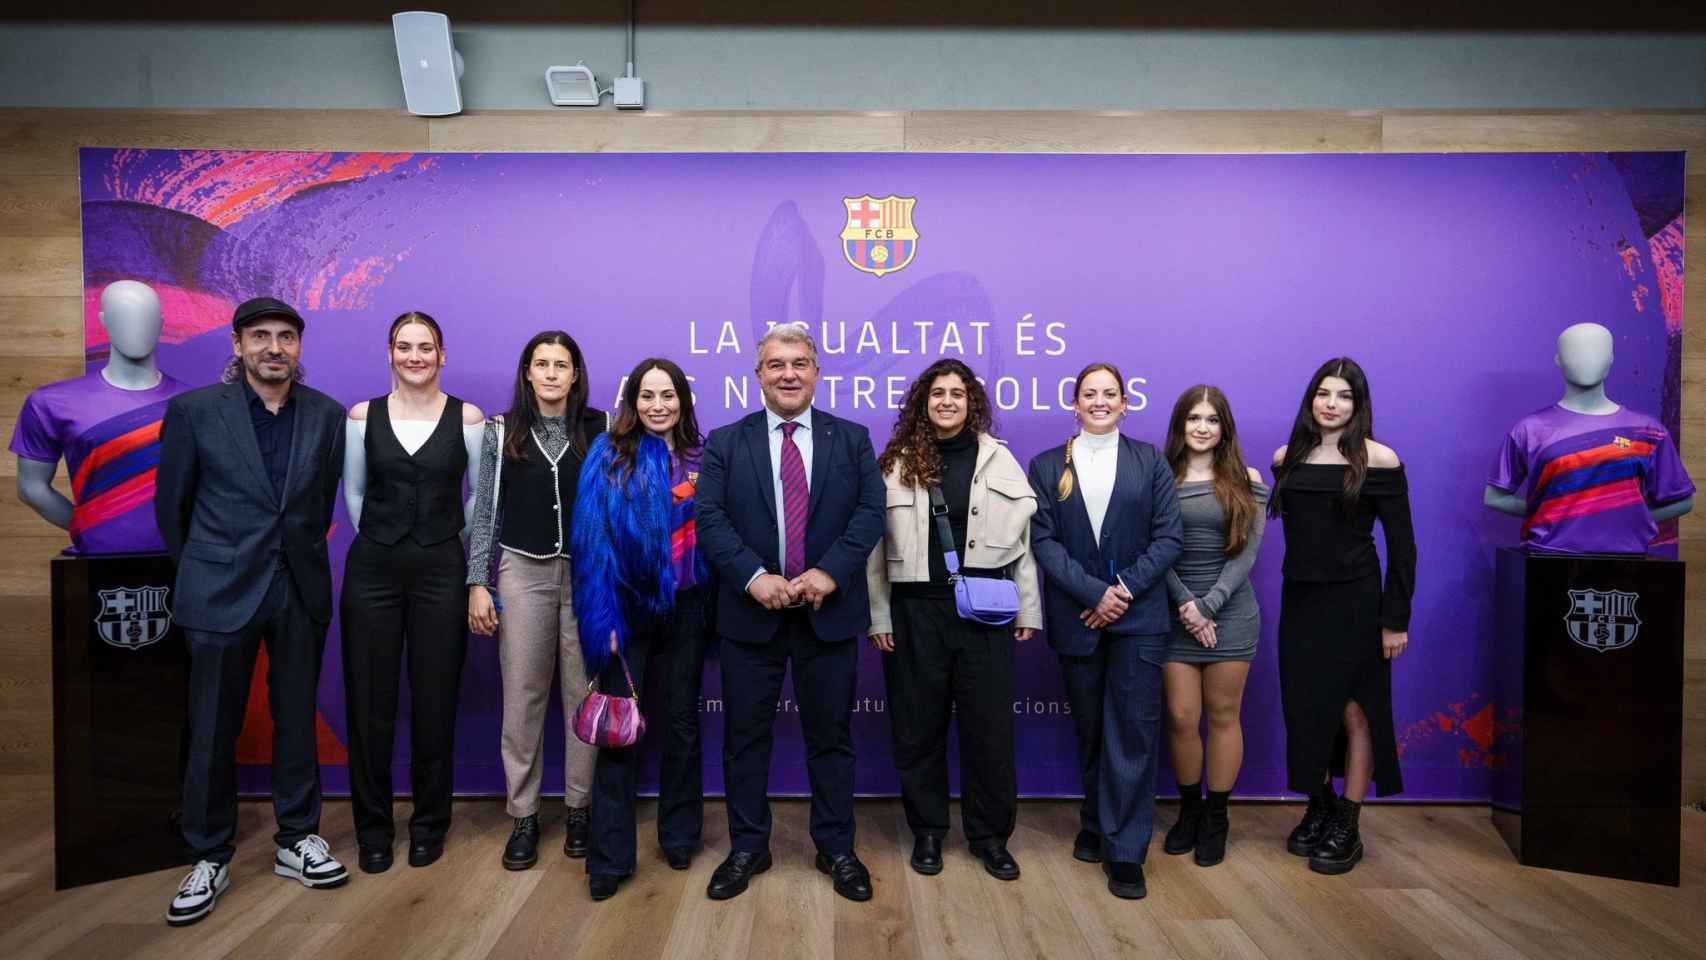 El presidente del Barça, Joan Laporta, y el directivo de las secciones amateurs, Miquel Camps, con representantes de los equipos femeninos